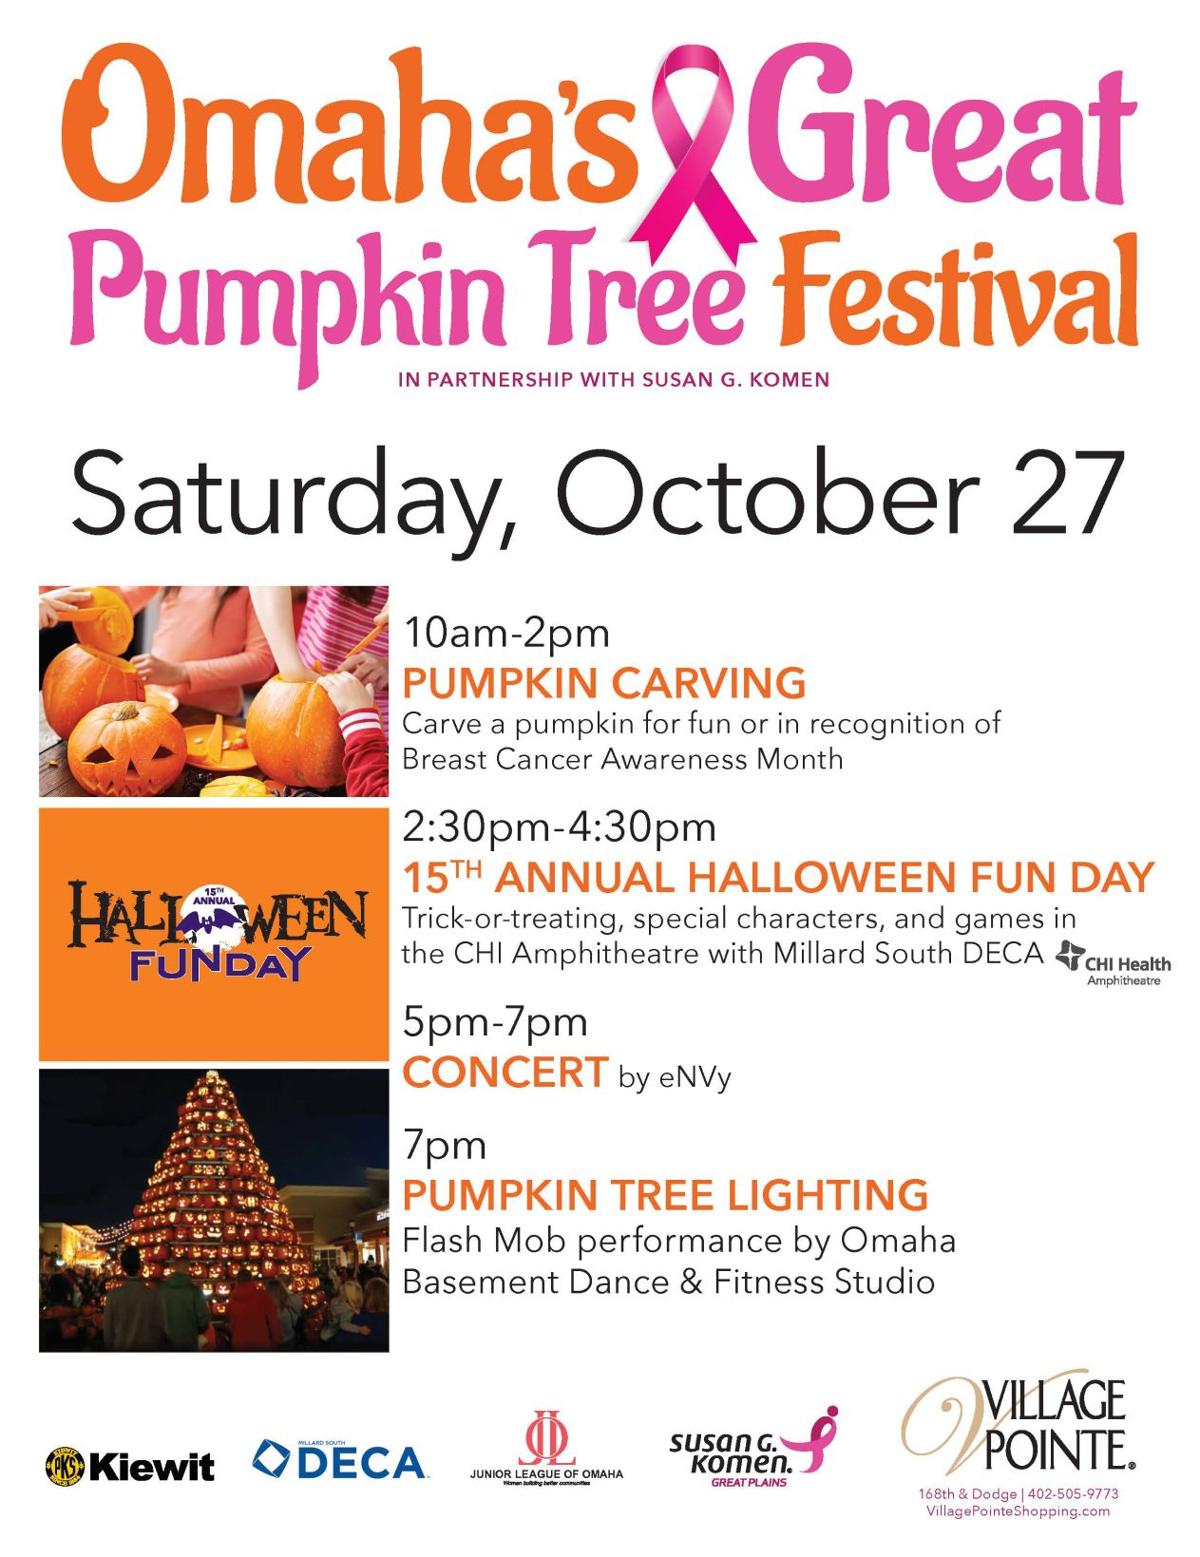 Omaha's Great Pumpkin Festival Omaha events calendar